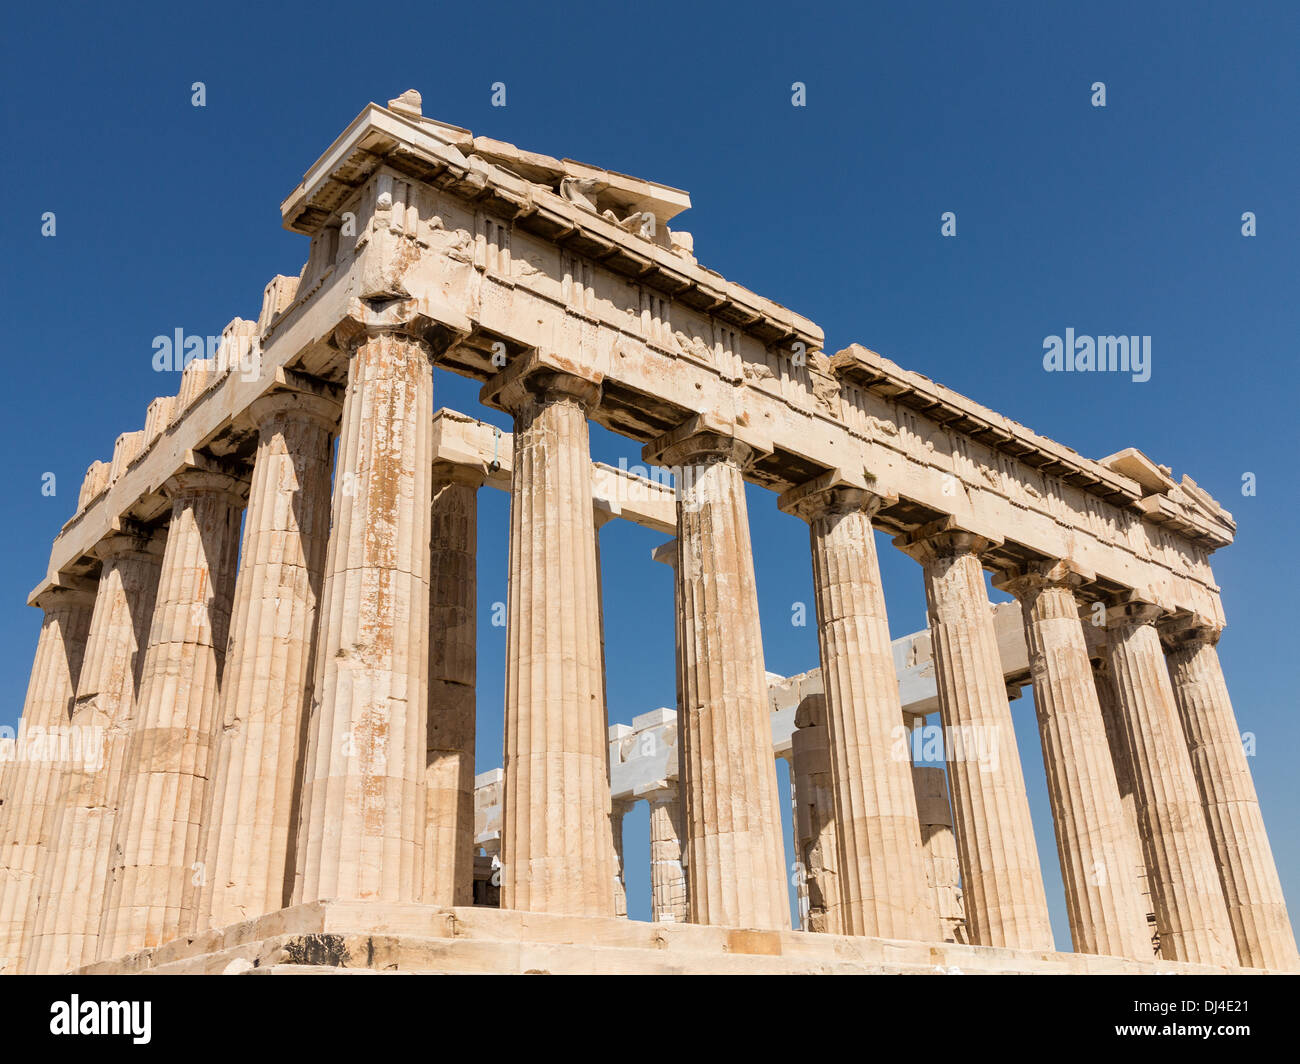 La antigua Grecia: El Partenón en la Acrópolis de Atenas, Grecia Foto de stock